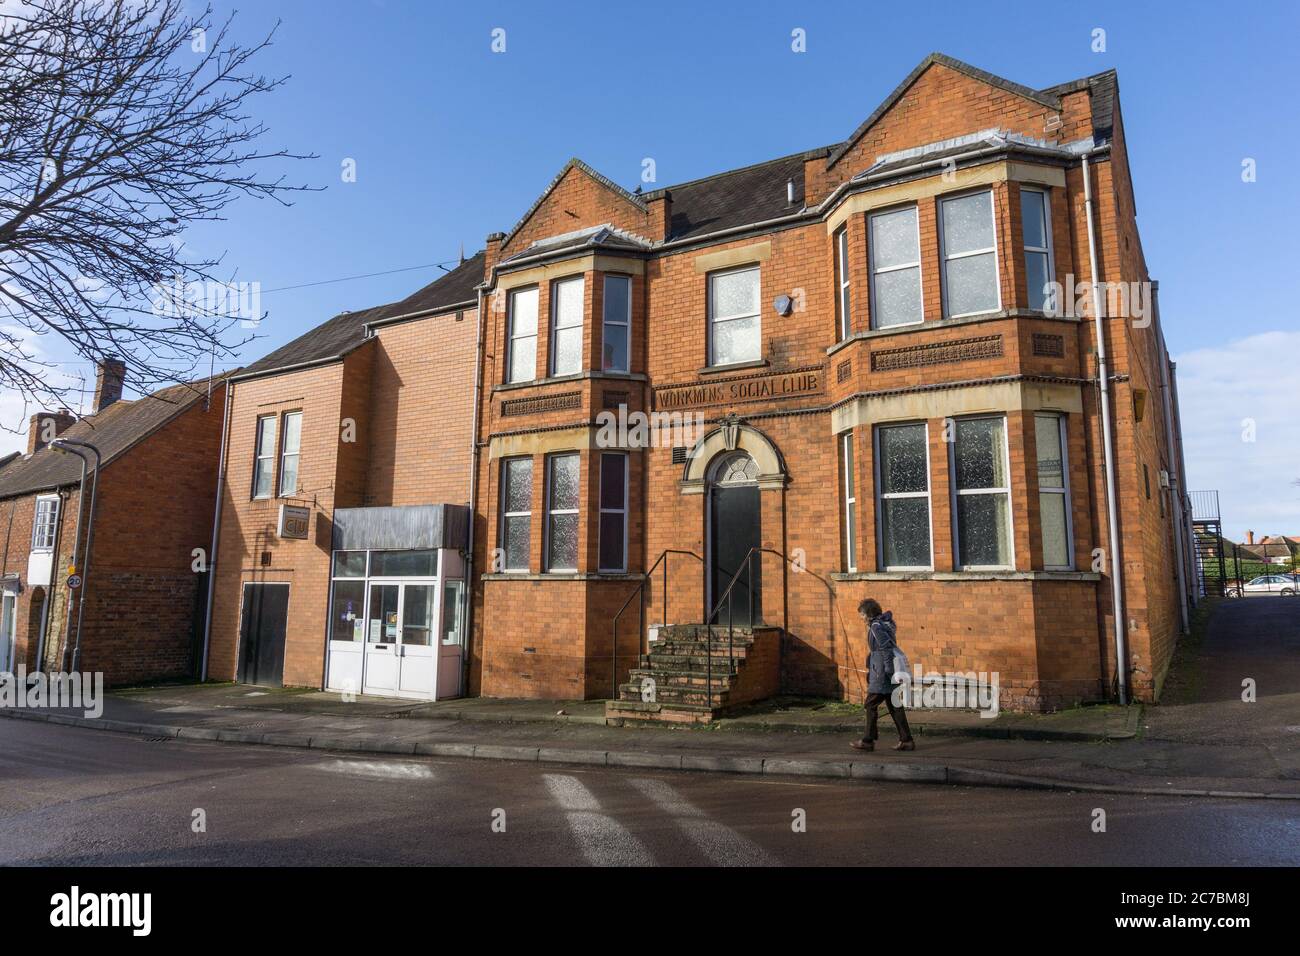 Facciata di una vecchia casa in mattoni rossi con segnaletica 'Workmens social club' Newport Pagnell, Buckinghamshire, Regno Unito Foto Stock